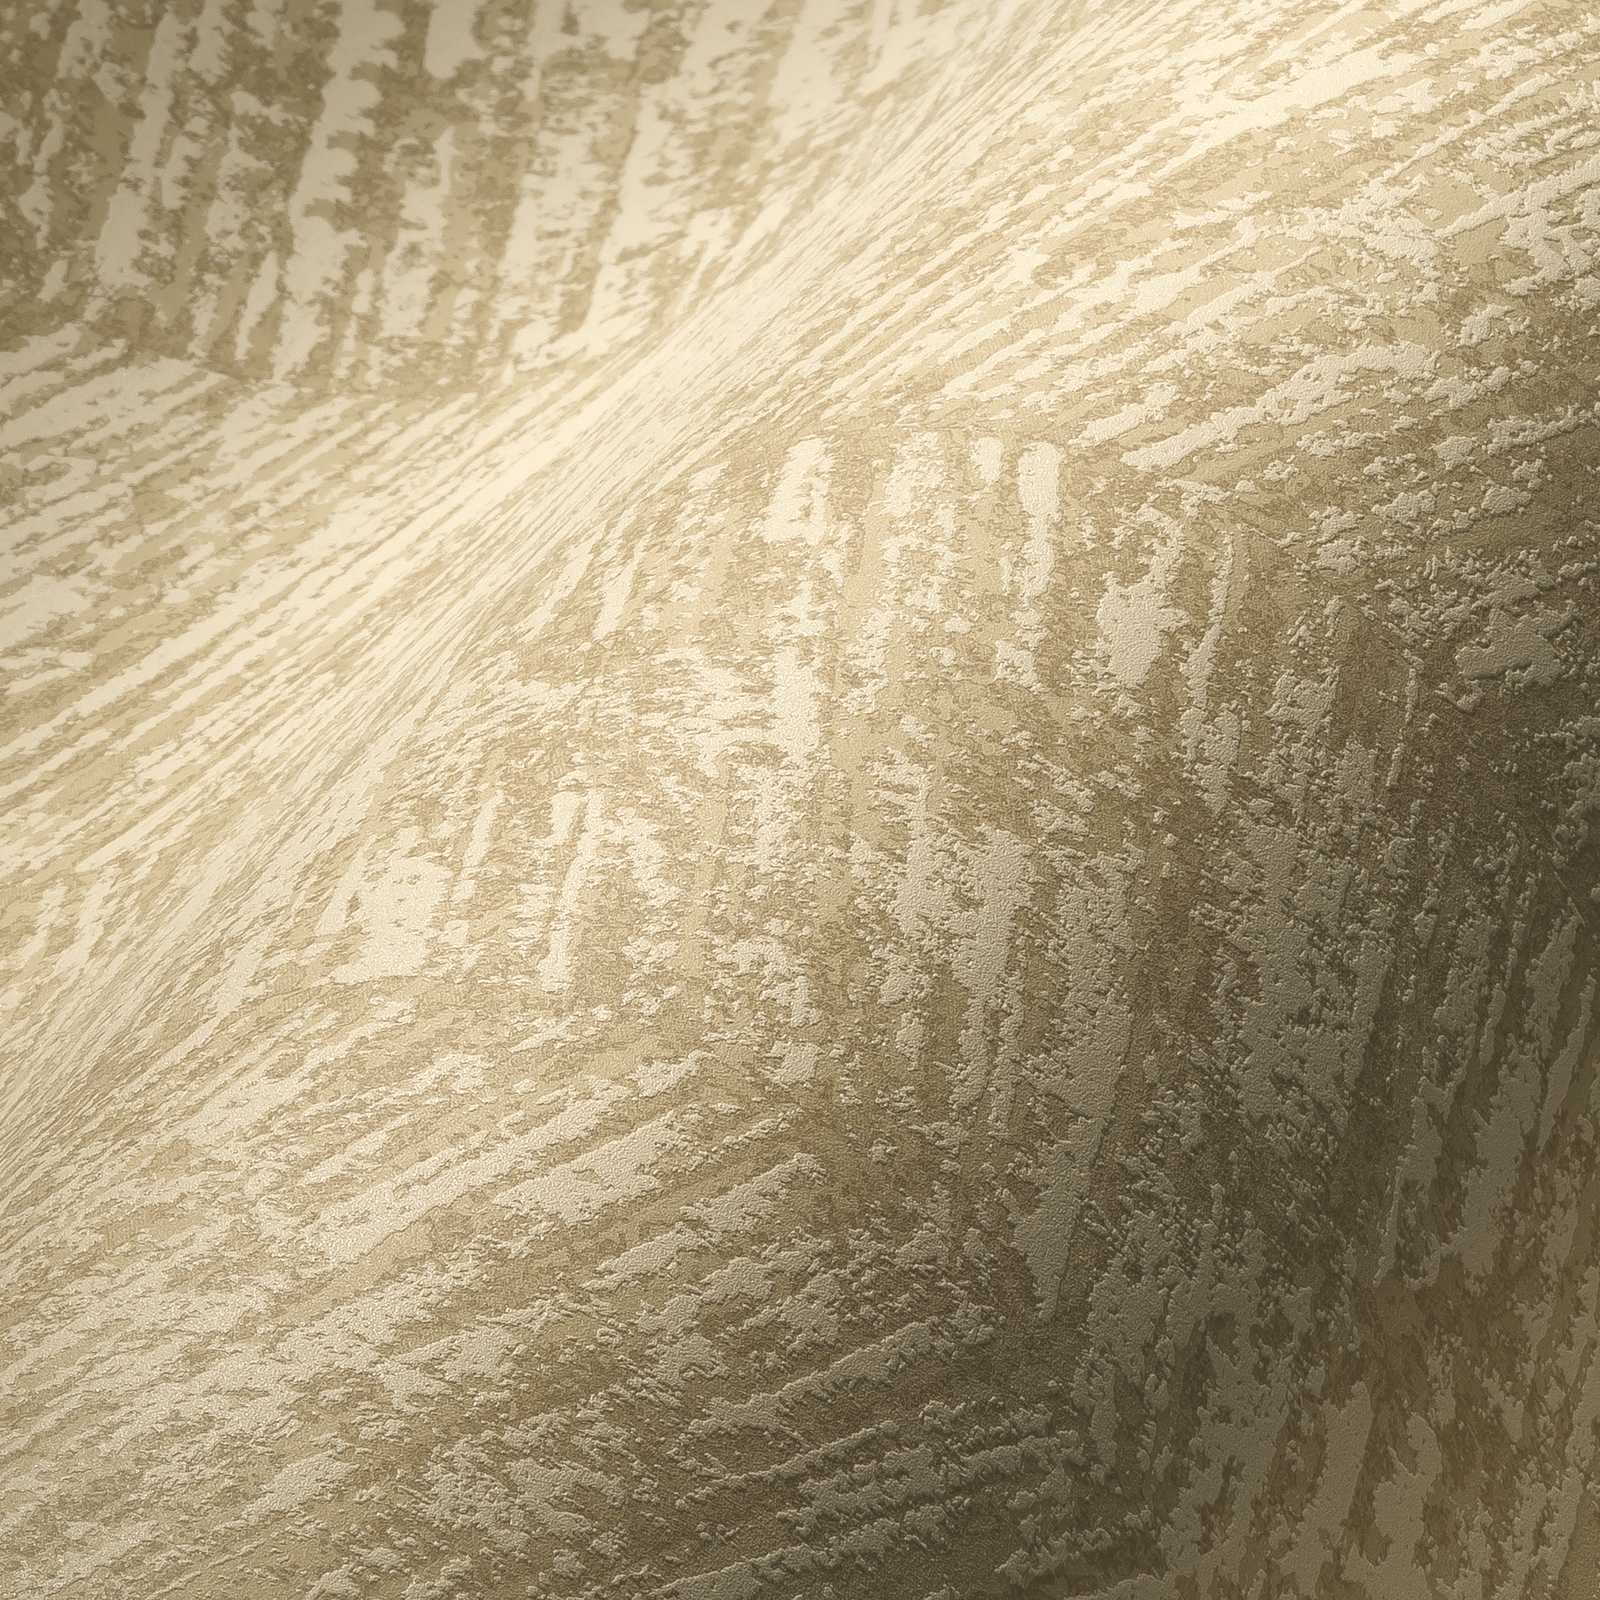             Ethno behangvlies met structuureffect - beige, metallic
        